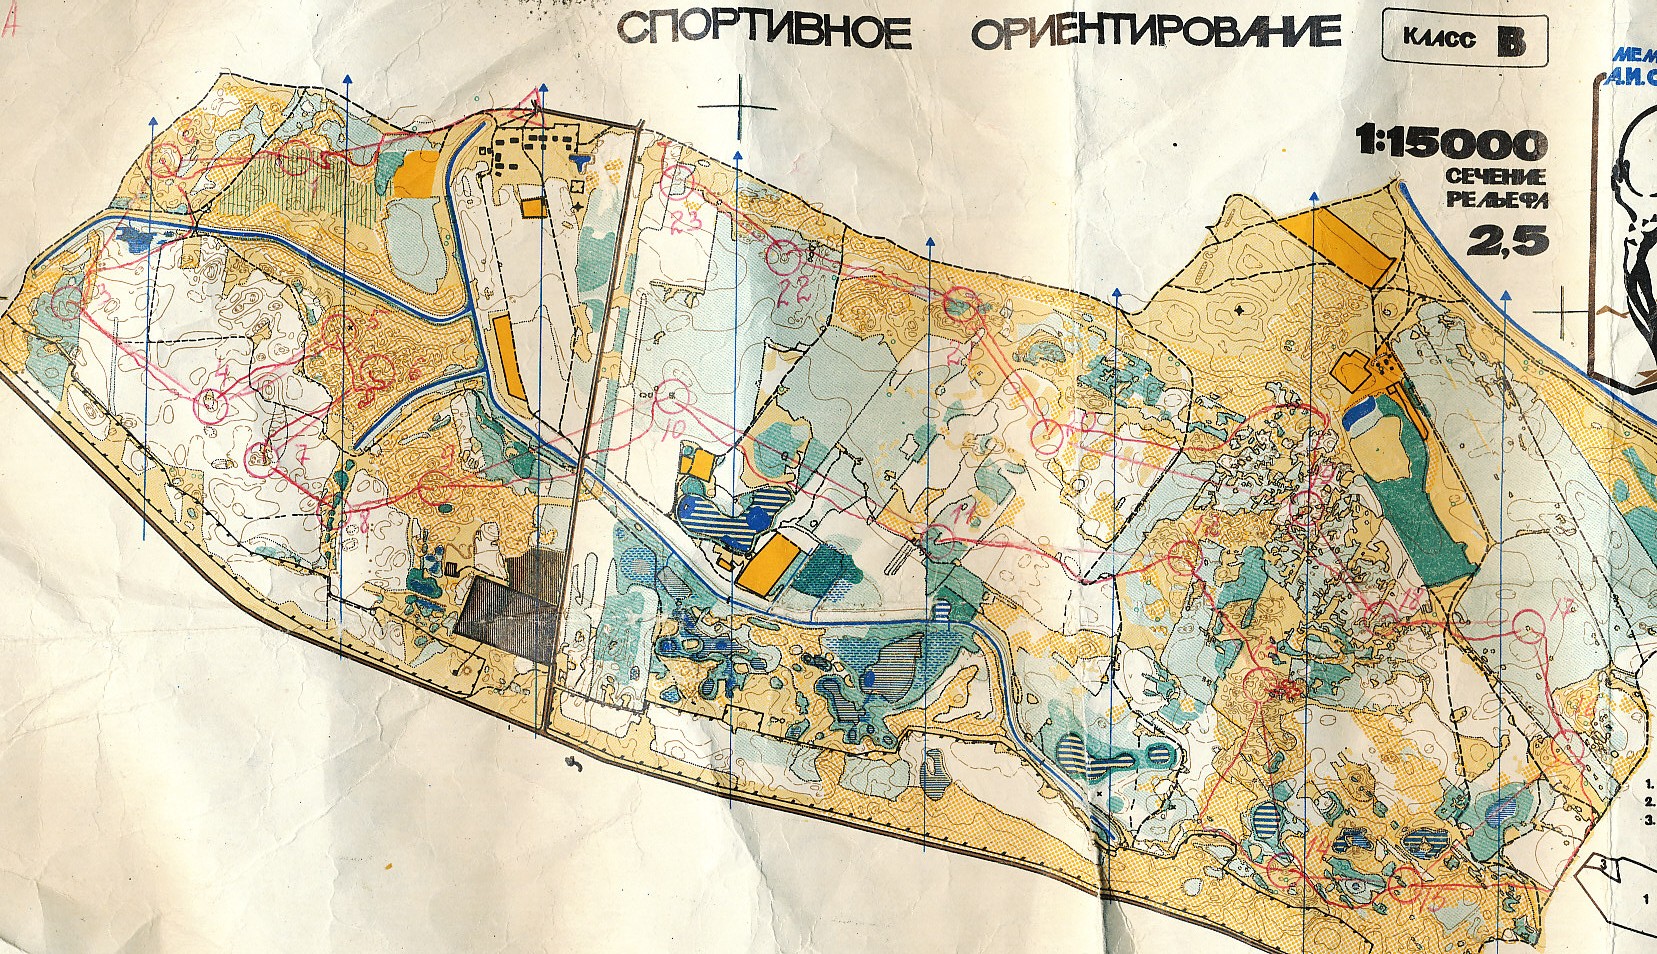 HøstØst, Dnepropetrovsk (01-11-1989)